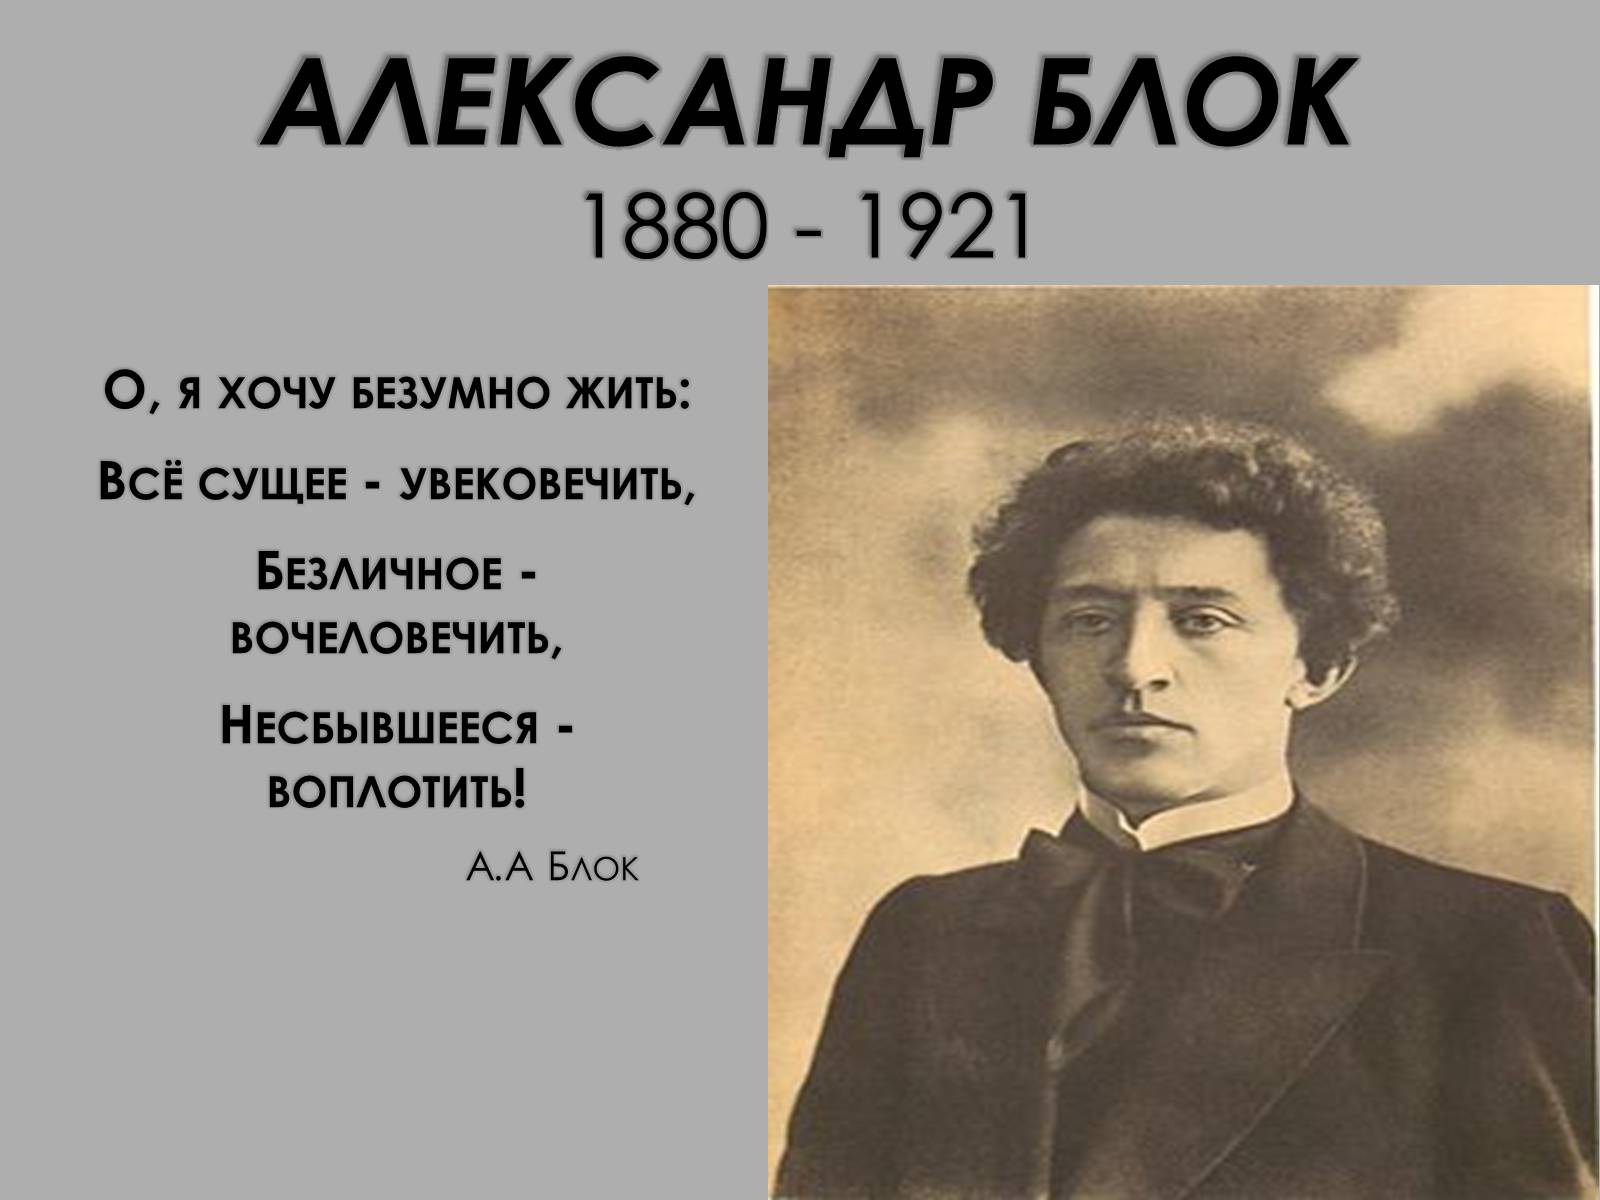 О я хочу безумно жить средства. А. А. блок (1880–1921).